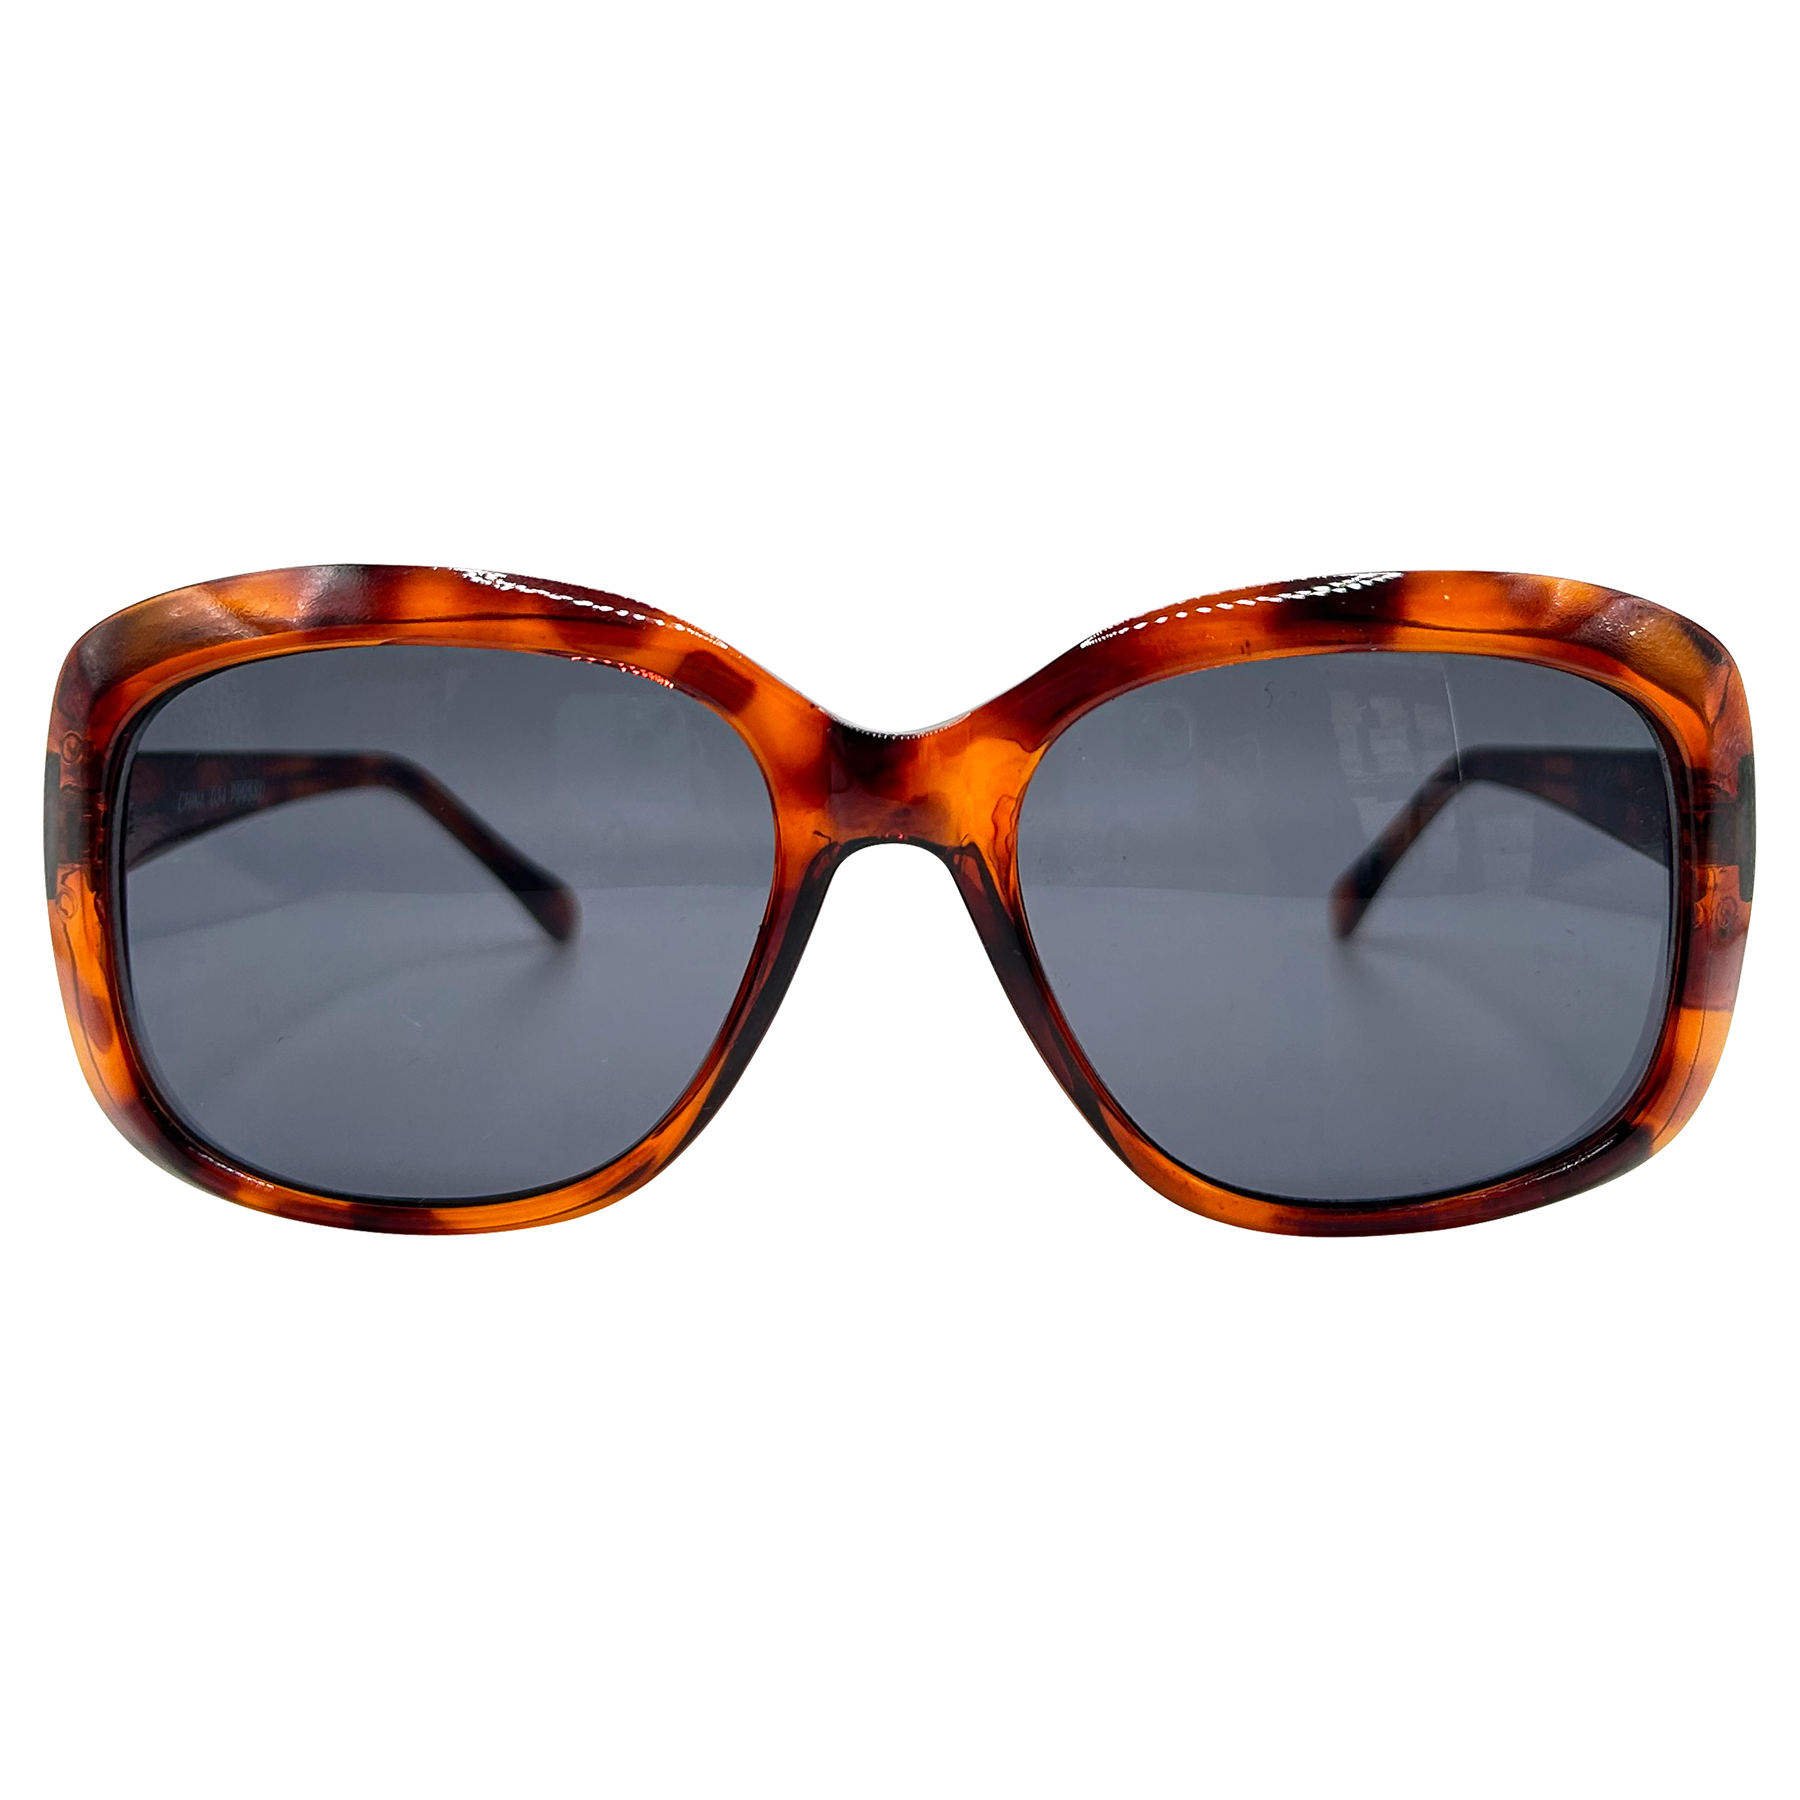 BLAKE Tortoise/Super Dark Square Sunglasses